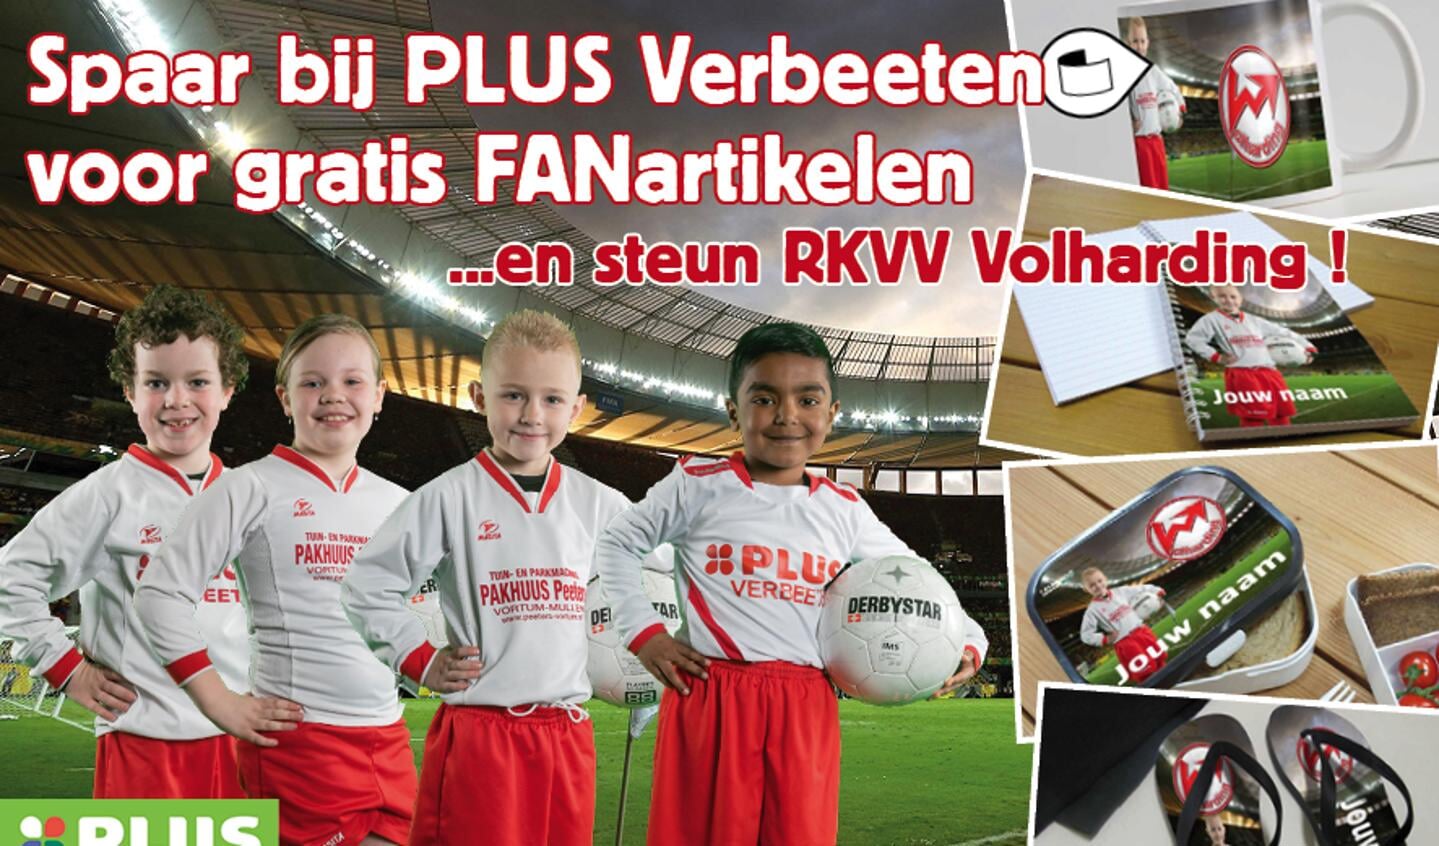 Voetbalclub Volharding doet mee aan de fan-spaaractie bij PLUS Verbeeten. 